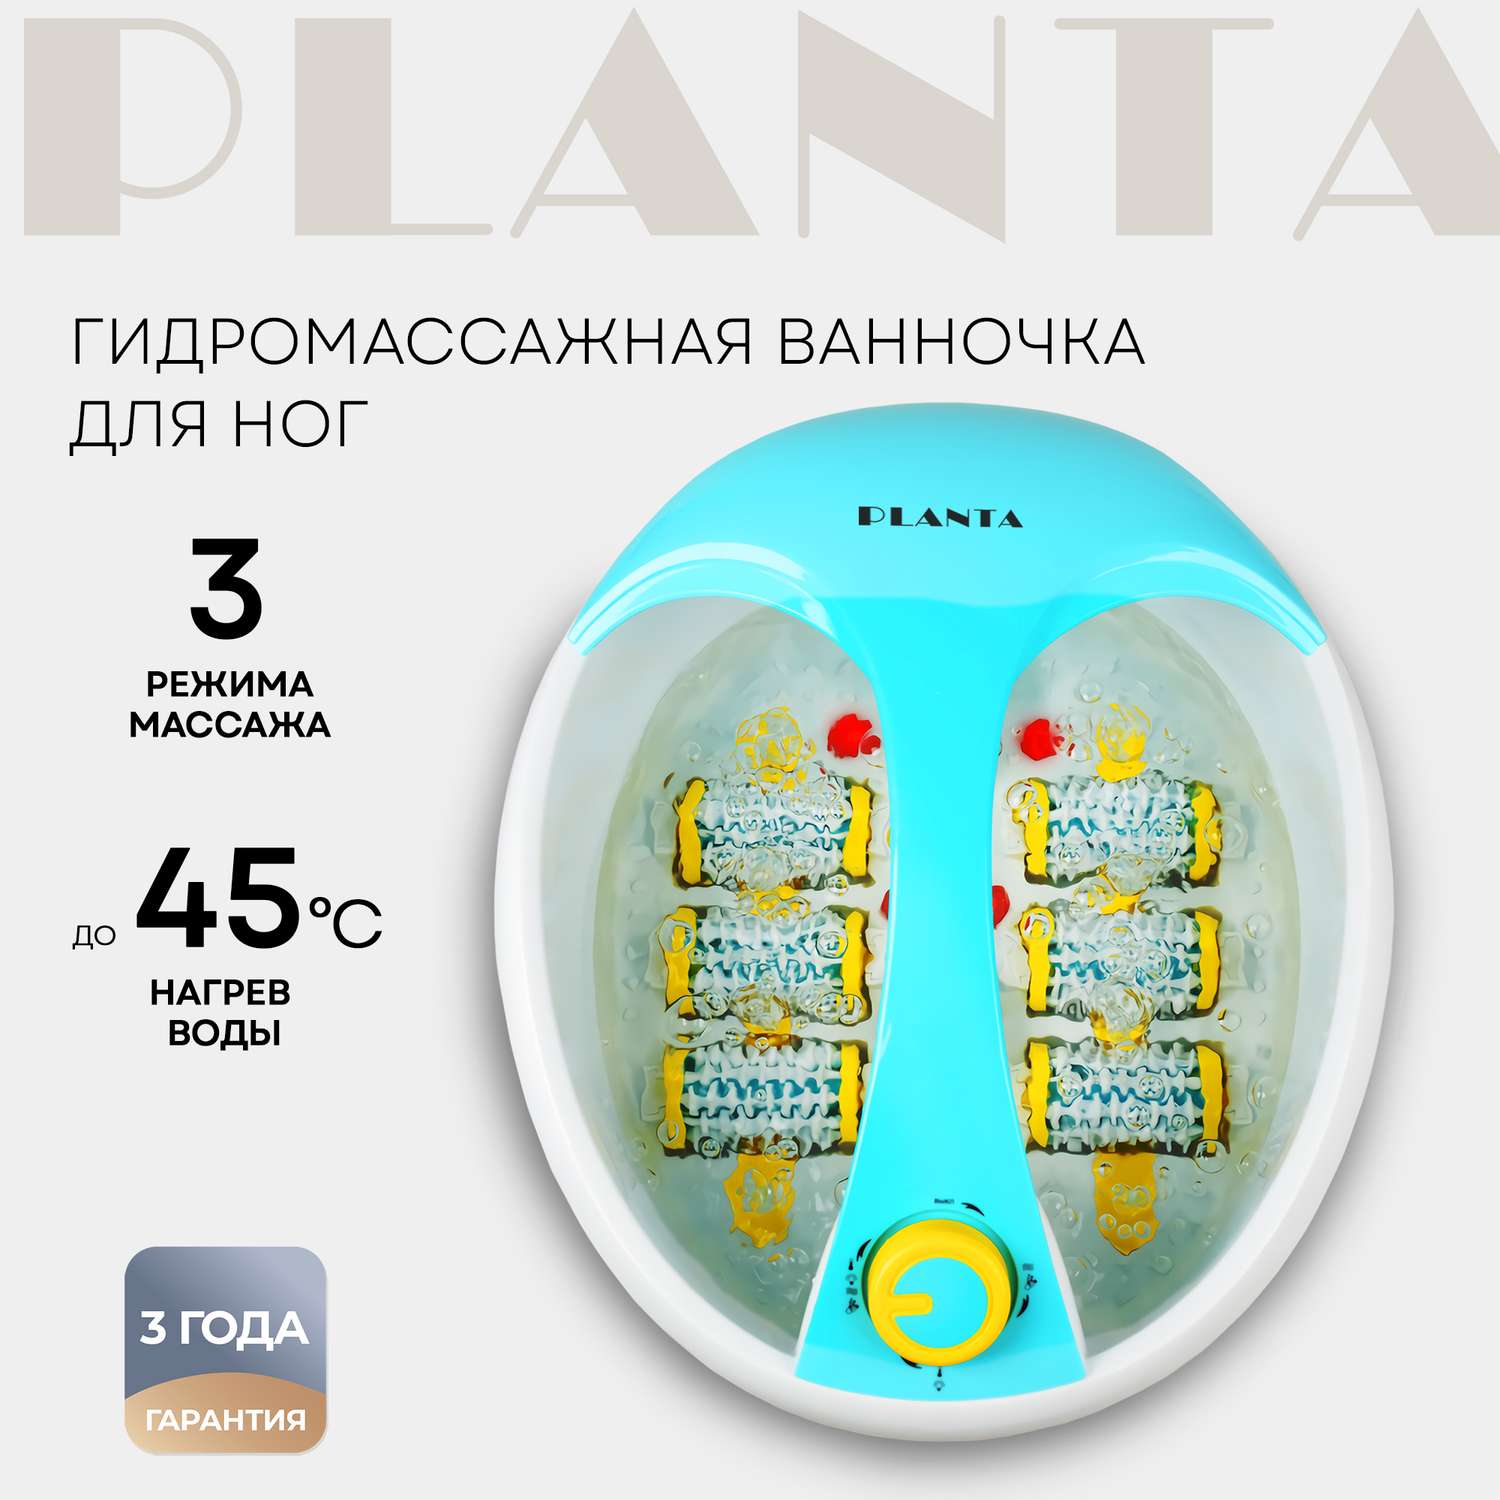 Гидромассажная ванночка Planta MFS-300 3 режима подогрев до 45 градусов 6 массажных роликов - фото 1